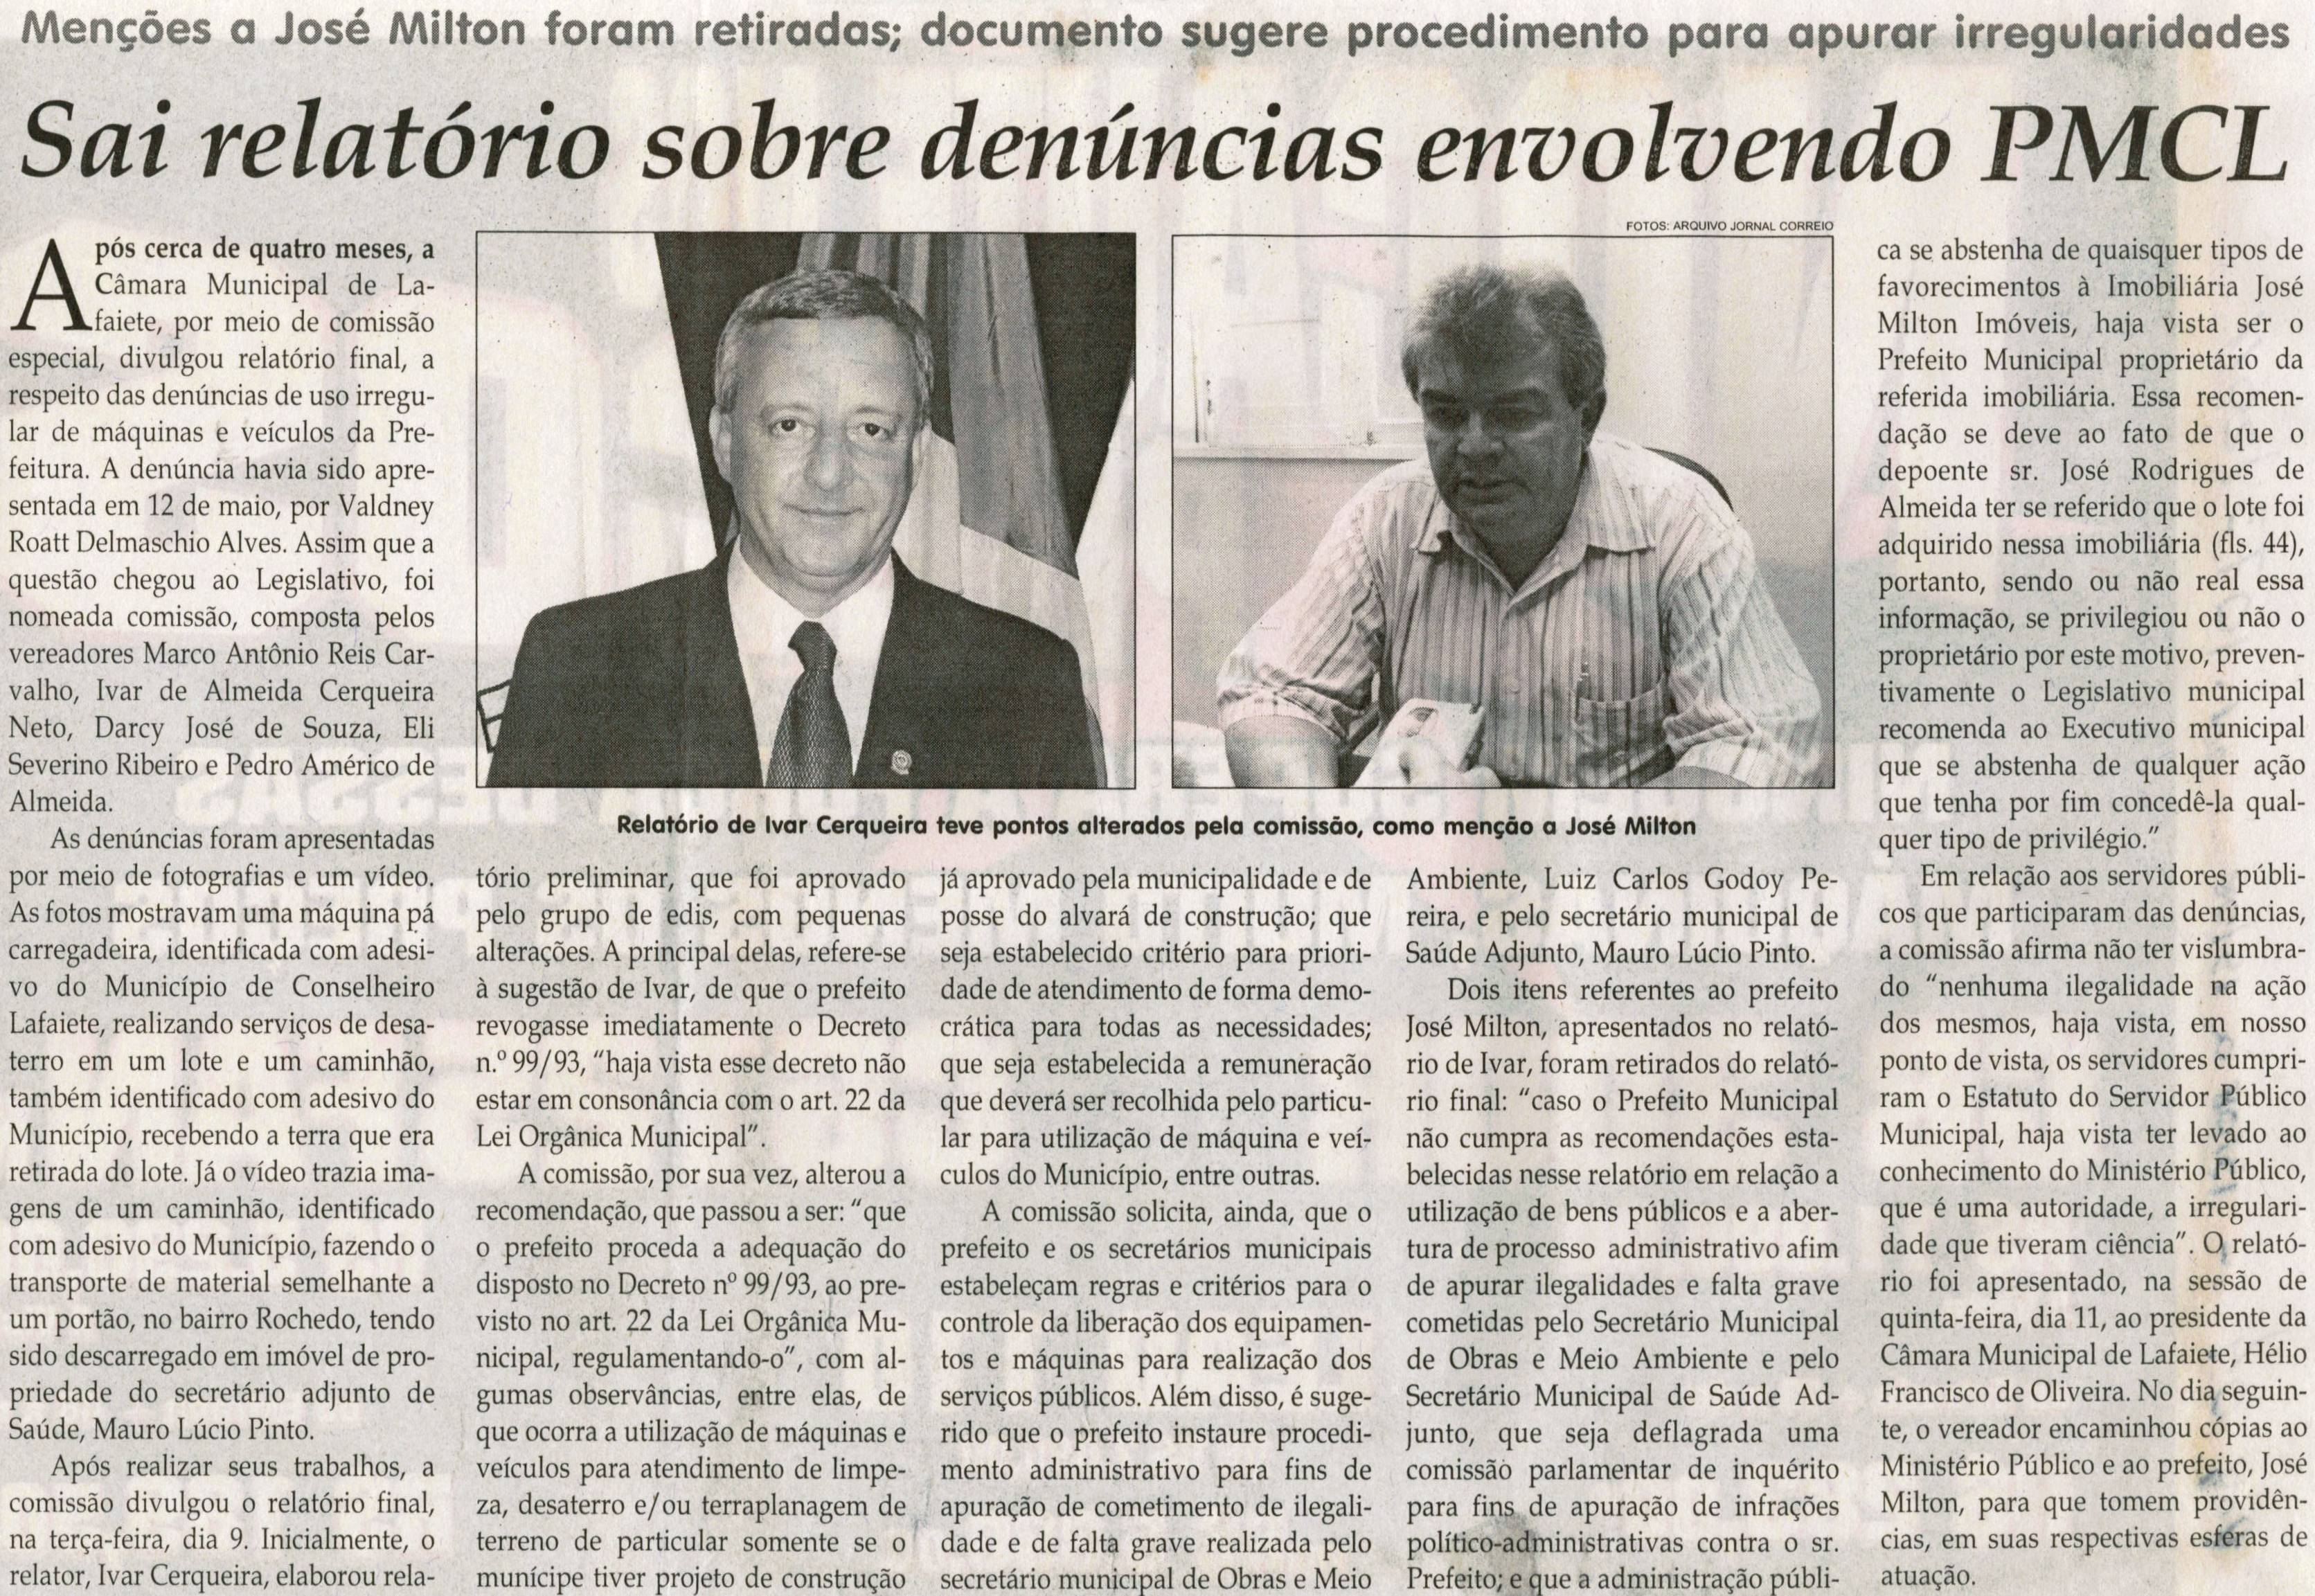 Sai relatório sobre denúncias envolvendo PMCL. Jornal Correio da Cidade, Conselheiro Lafaiete, 13 ago. 2011, p. 04.